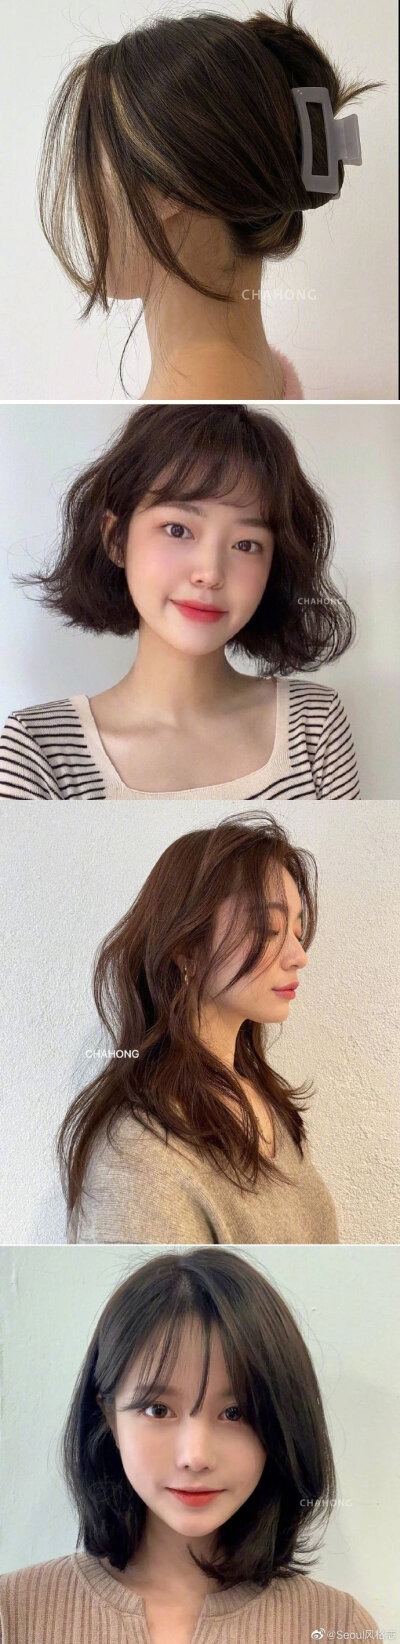 温柔韩系发型参考
分享给最近想换发型的姐妹～ ​​​​